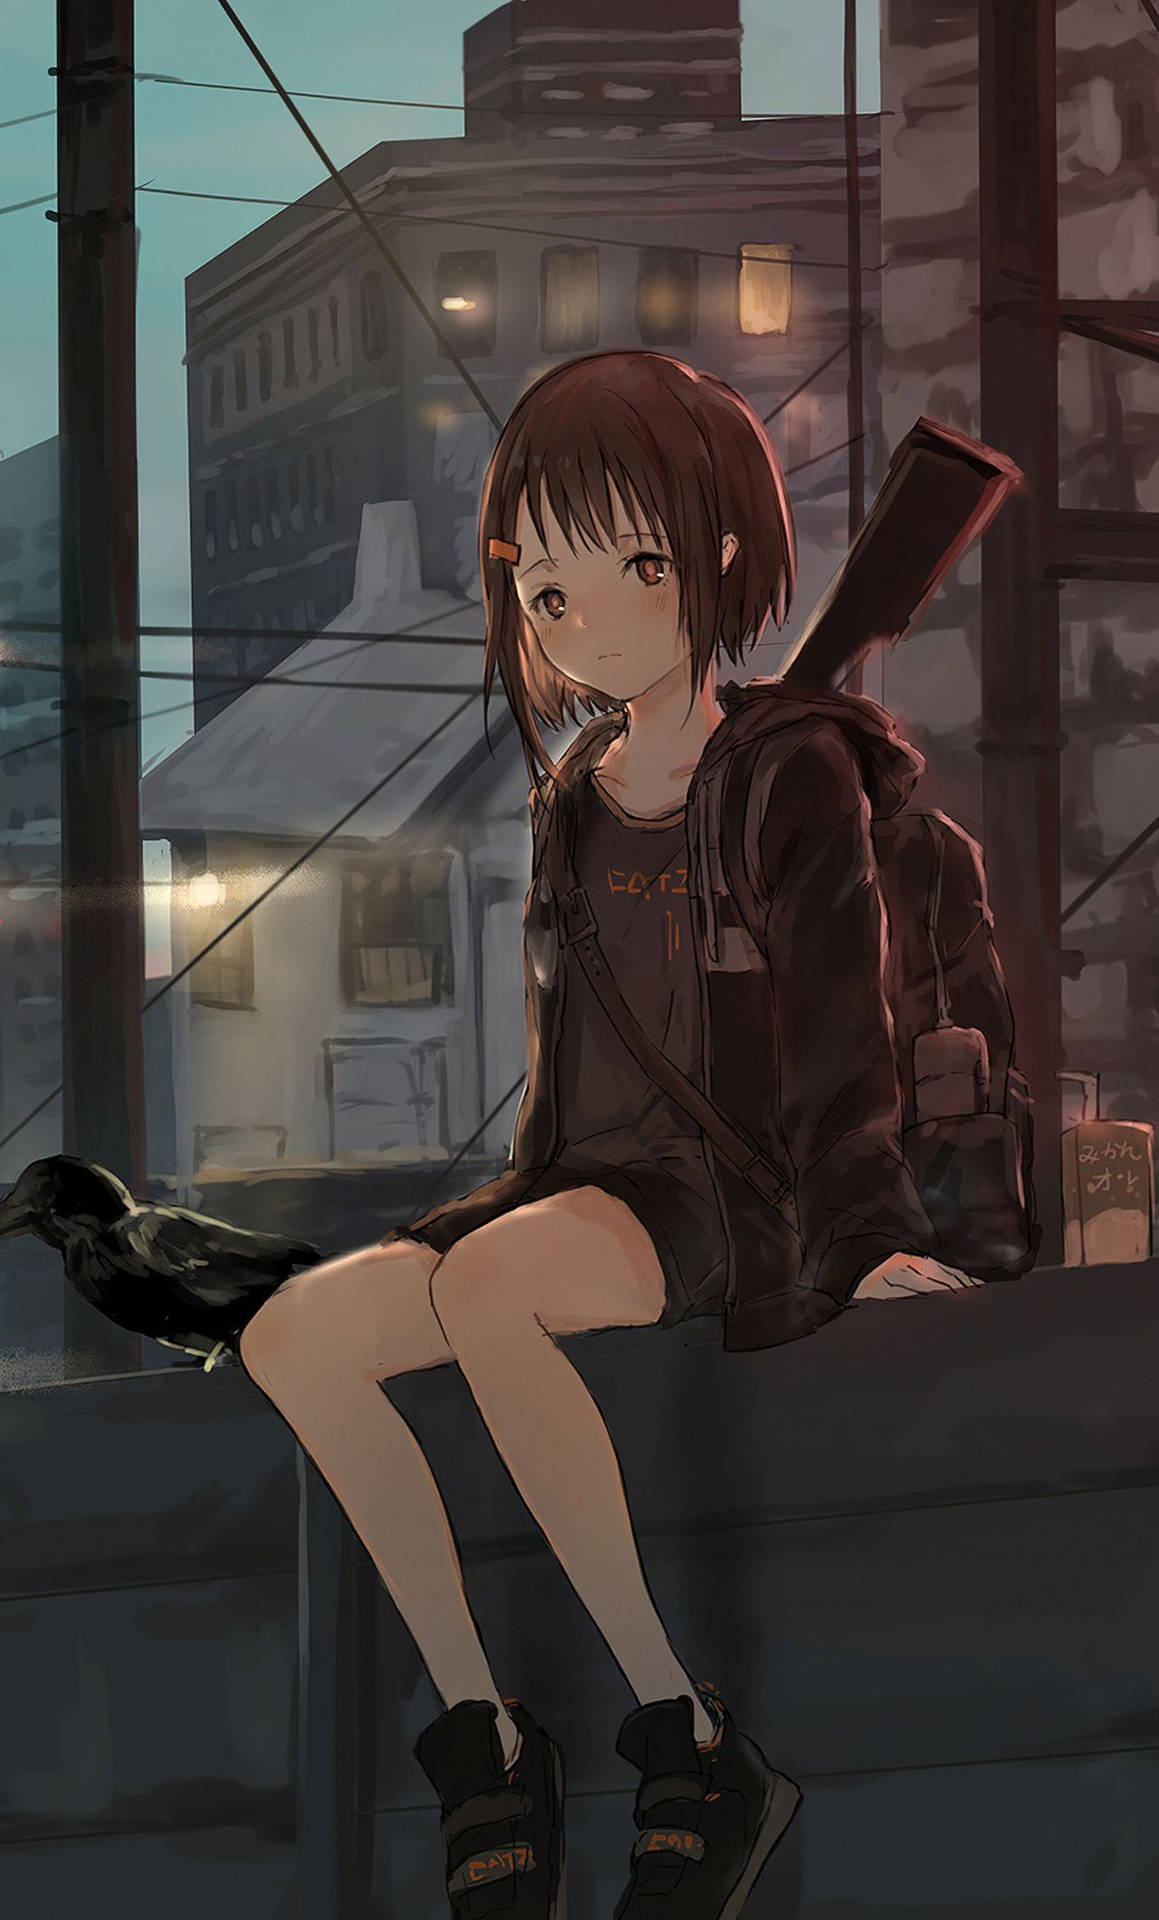 Anime Girl Sad Alone On Ledge Background